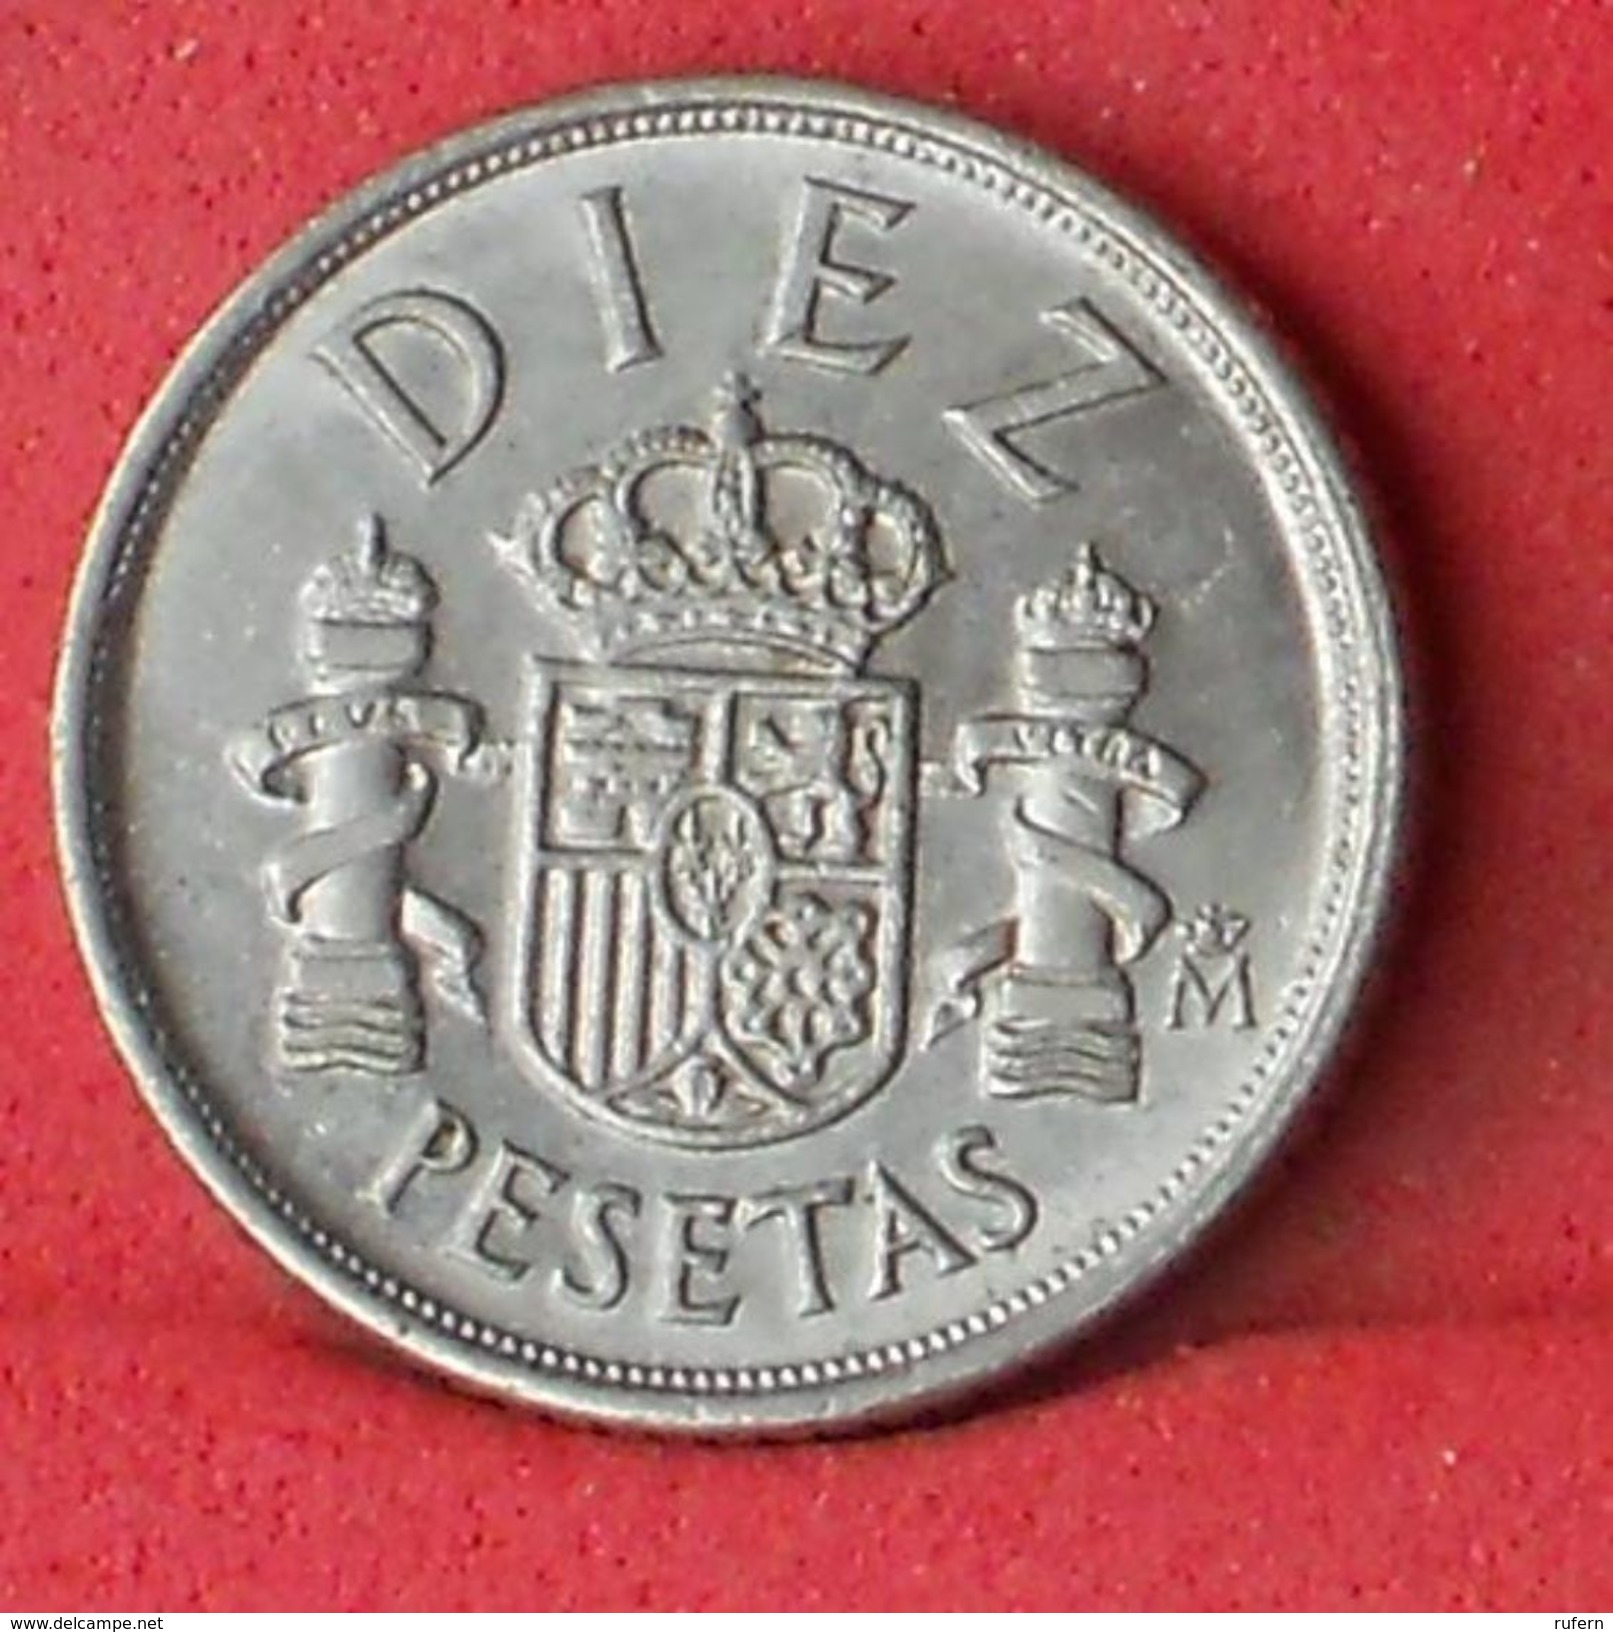 SPAIN 10 PESETAS 1983 - KM# 827 - (Nº18530) - 10 Pesetas